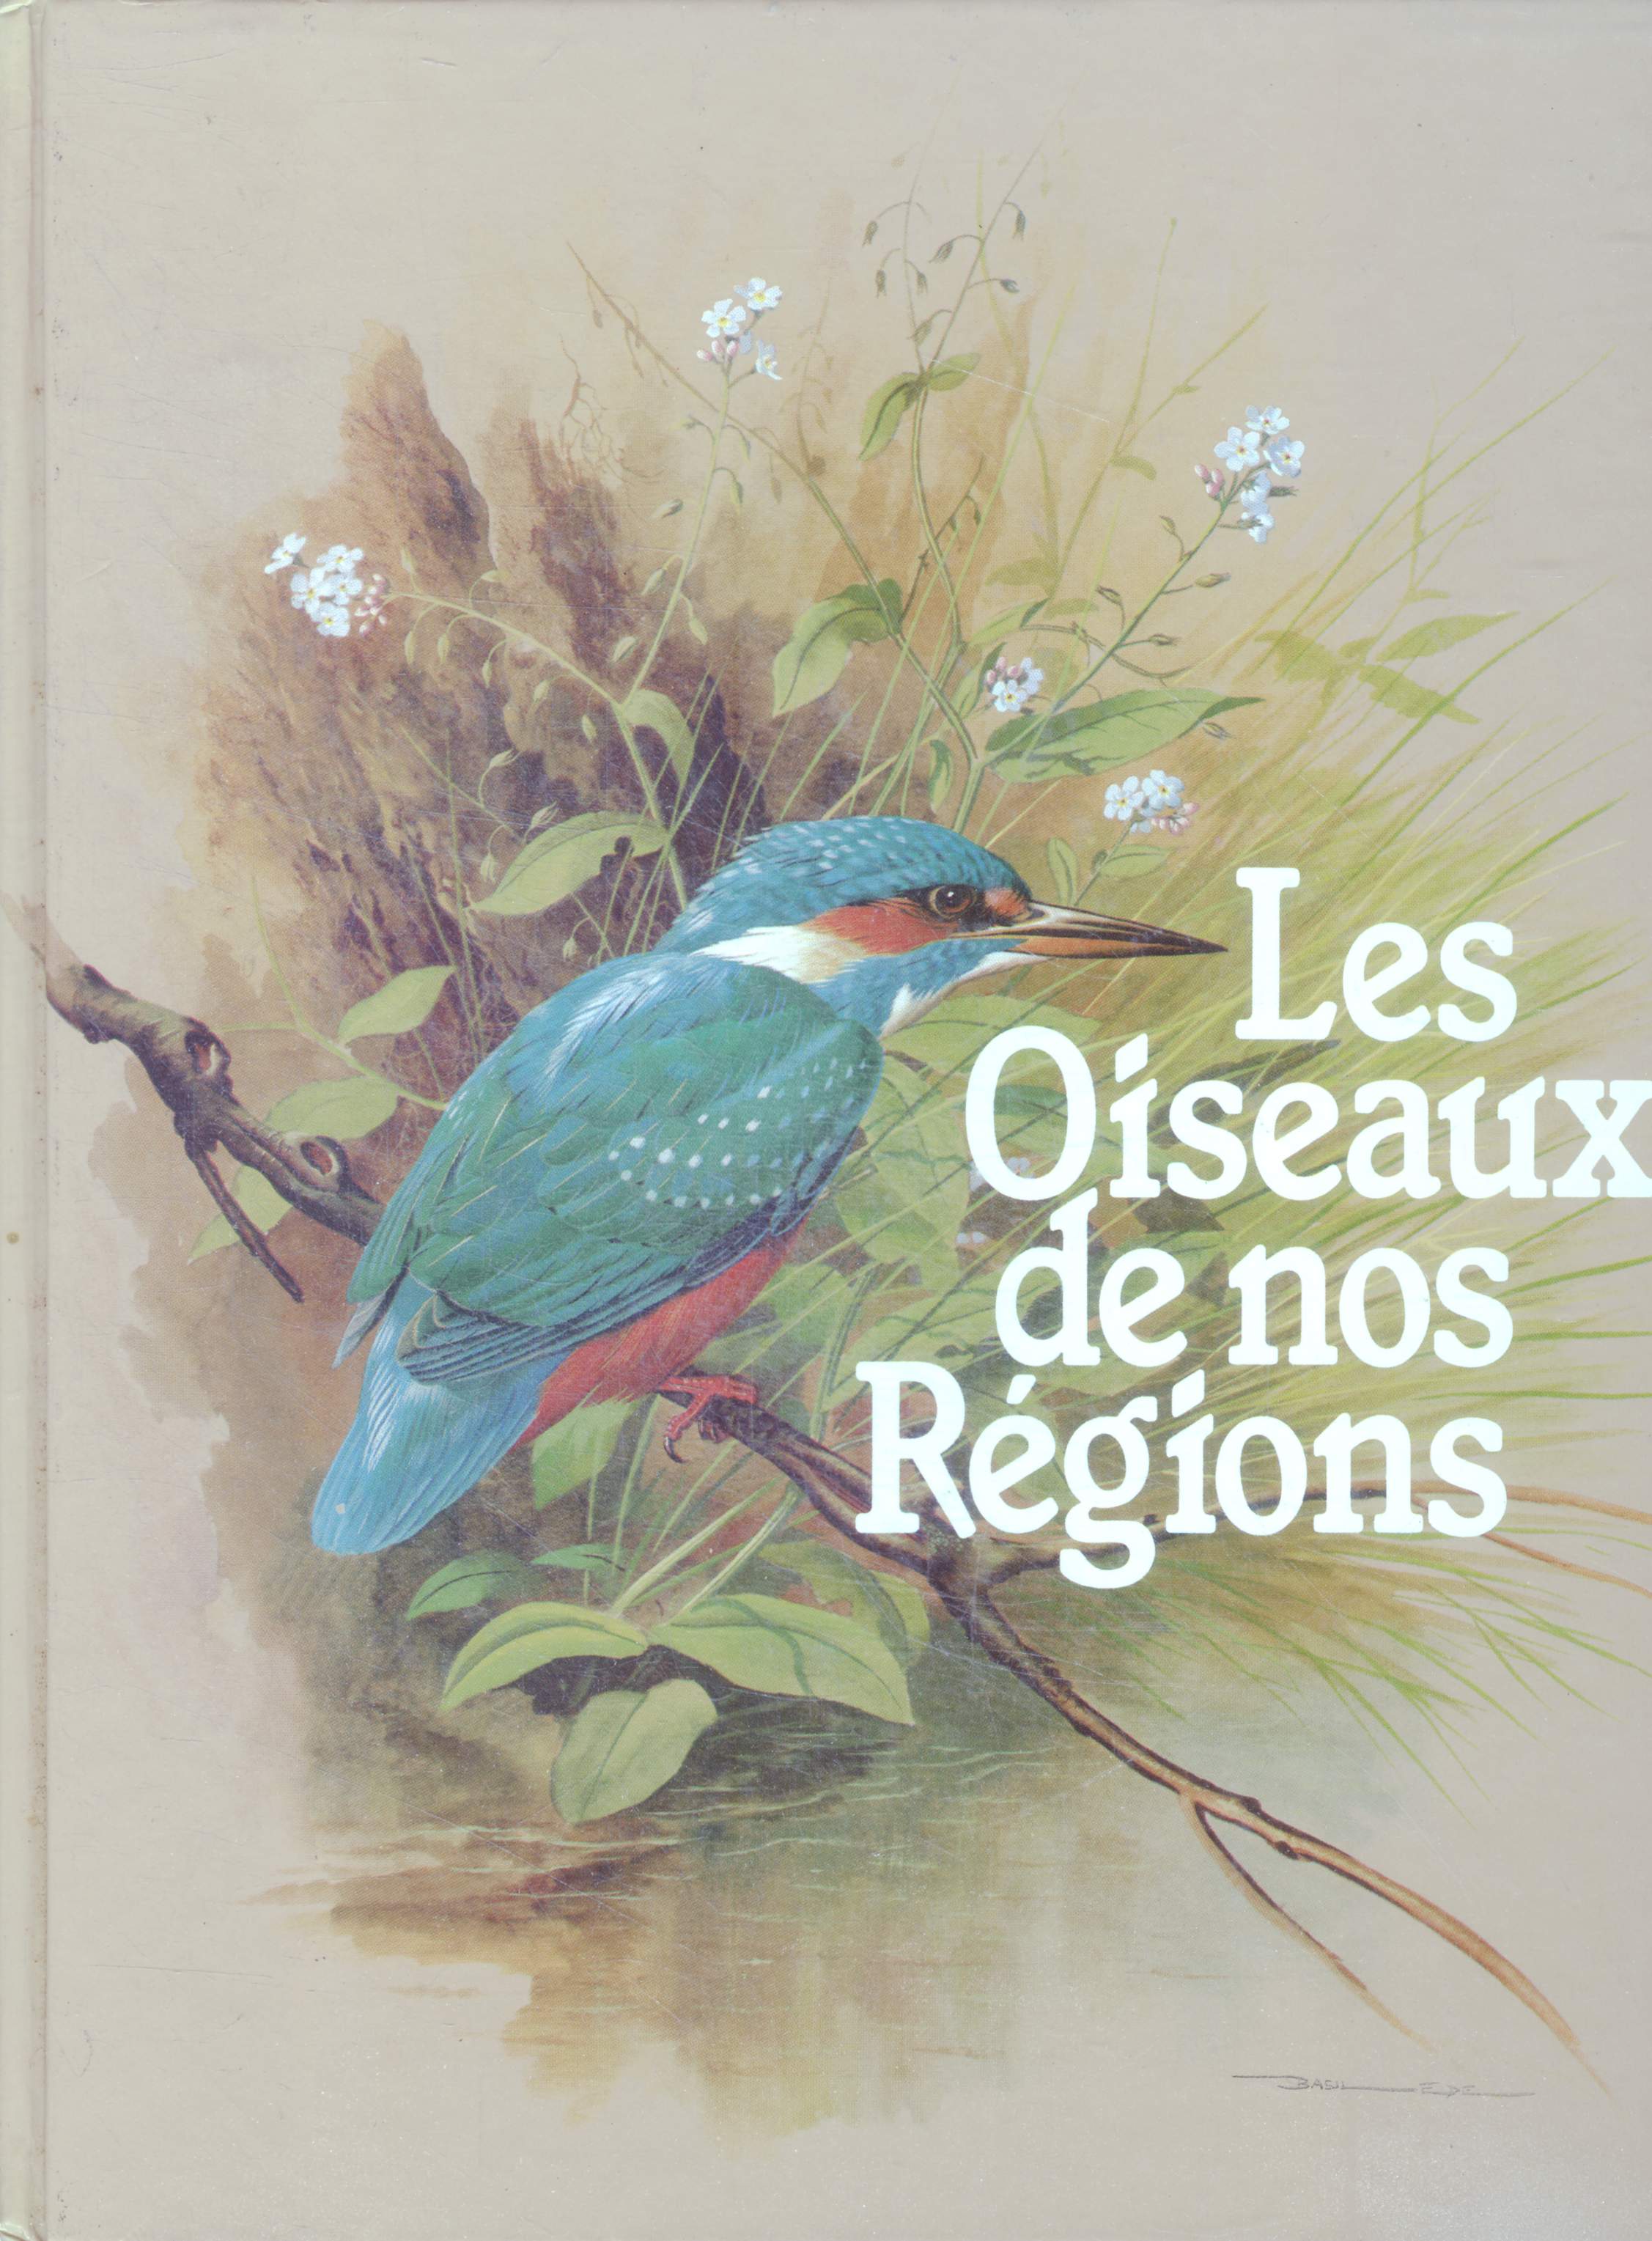 Les oiseaux de nos regions